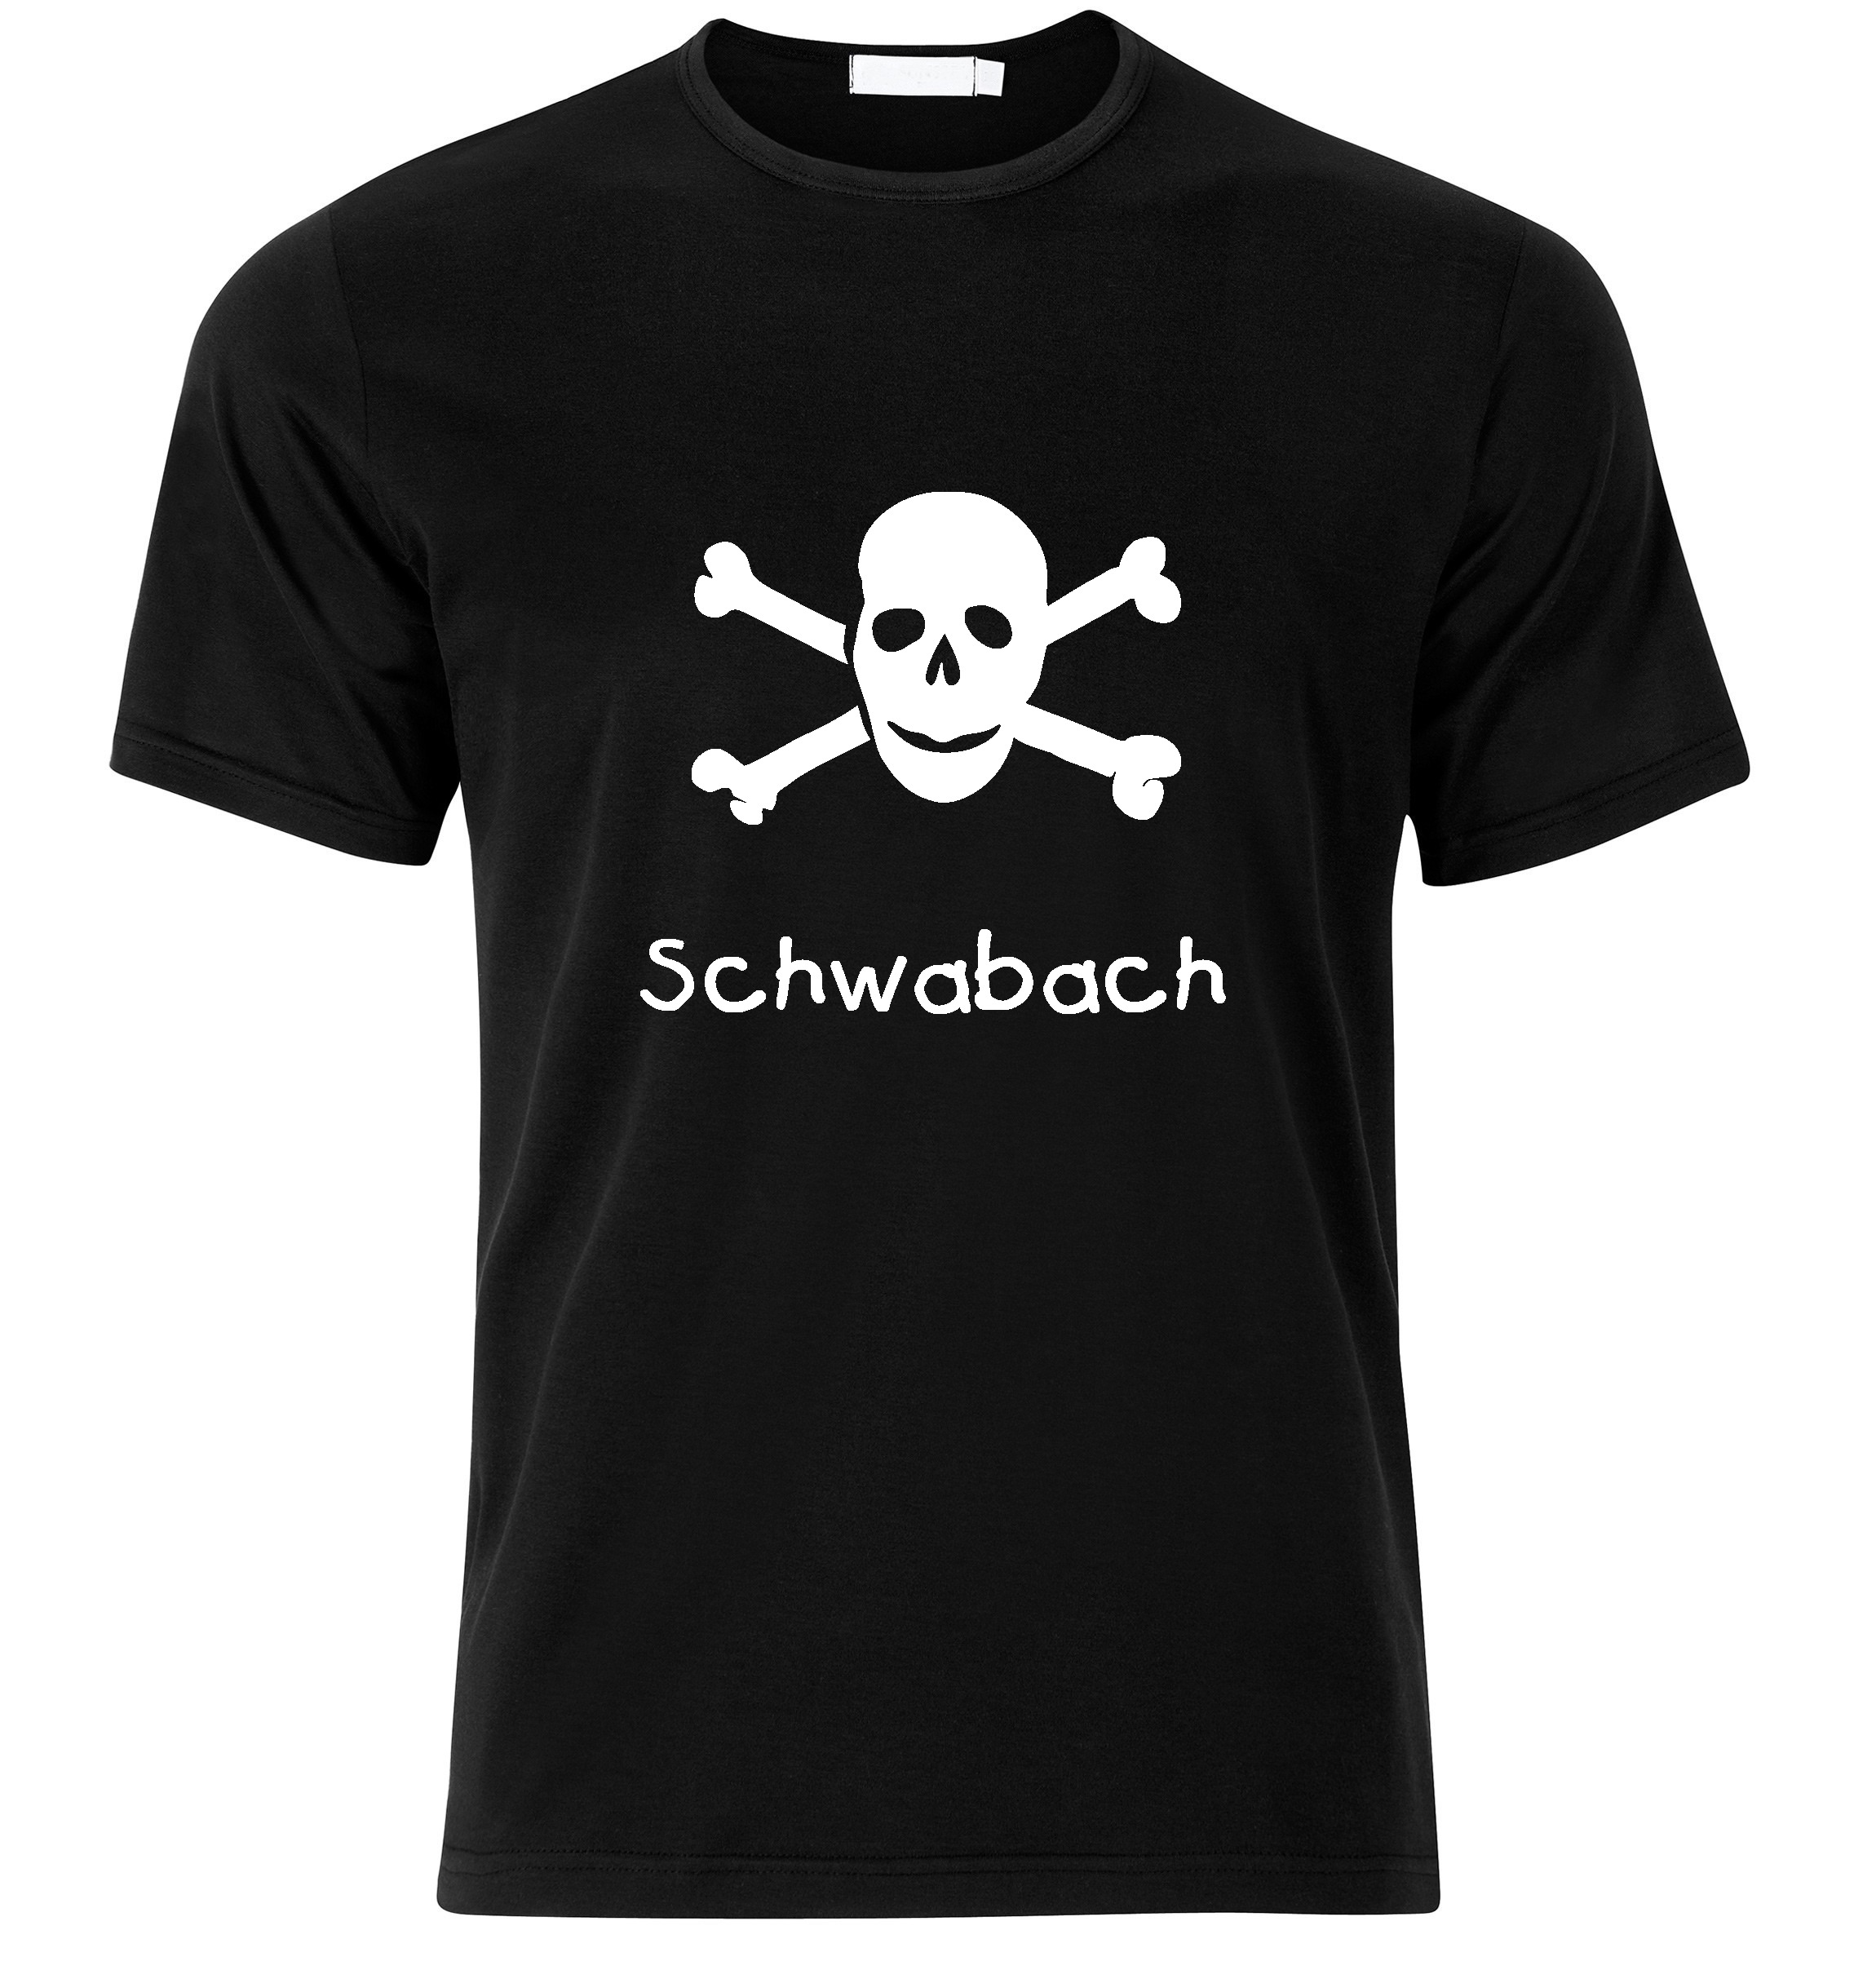 T-Shirt Schwabach Jolly Roger, Totenkopf